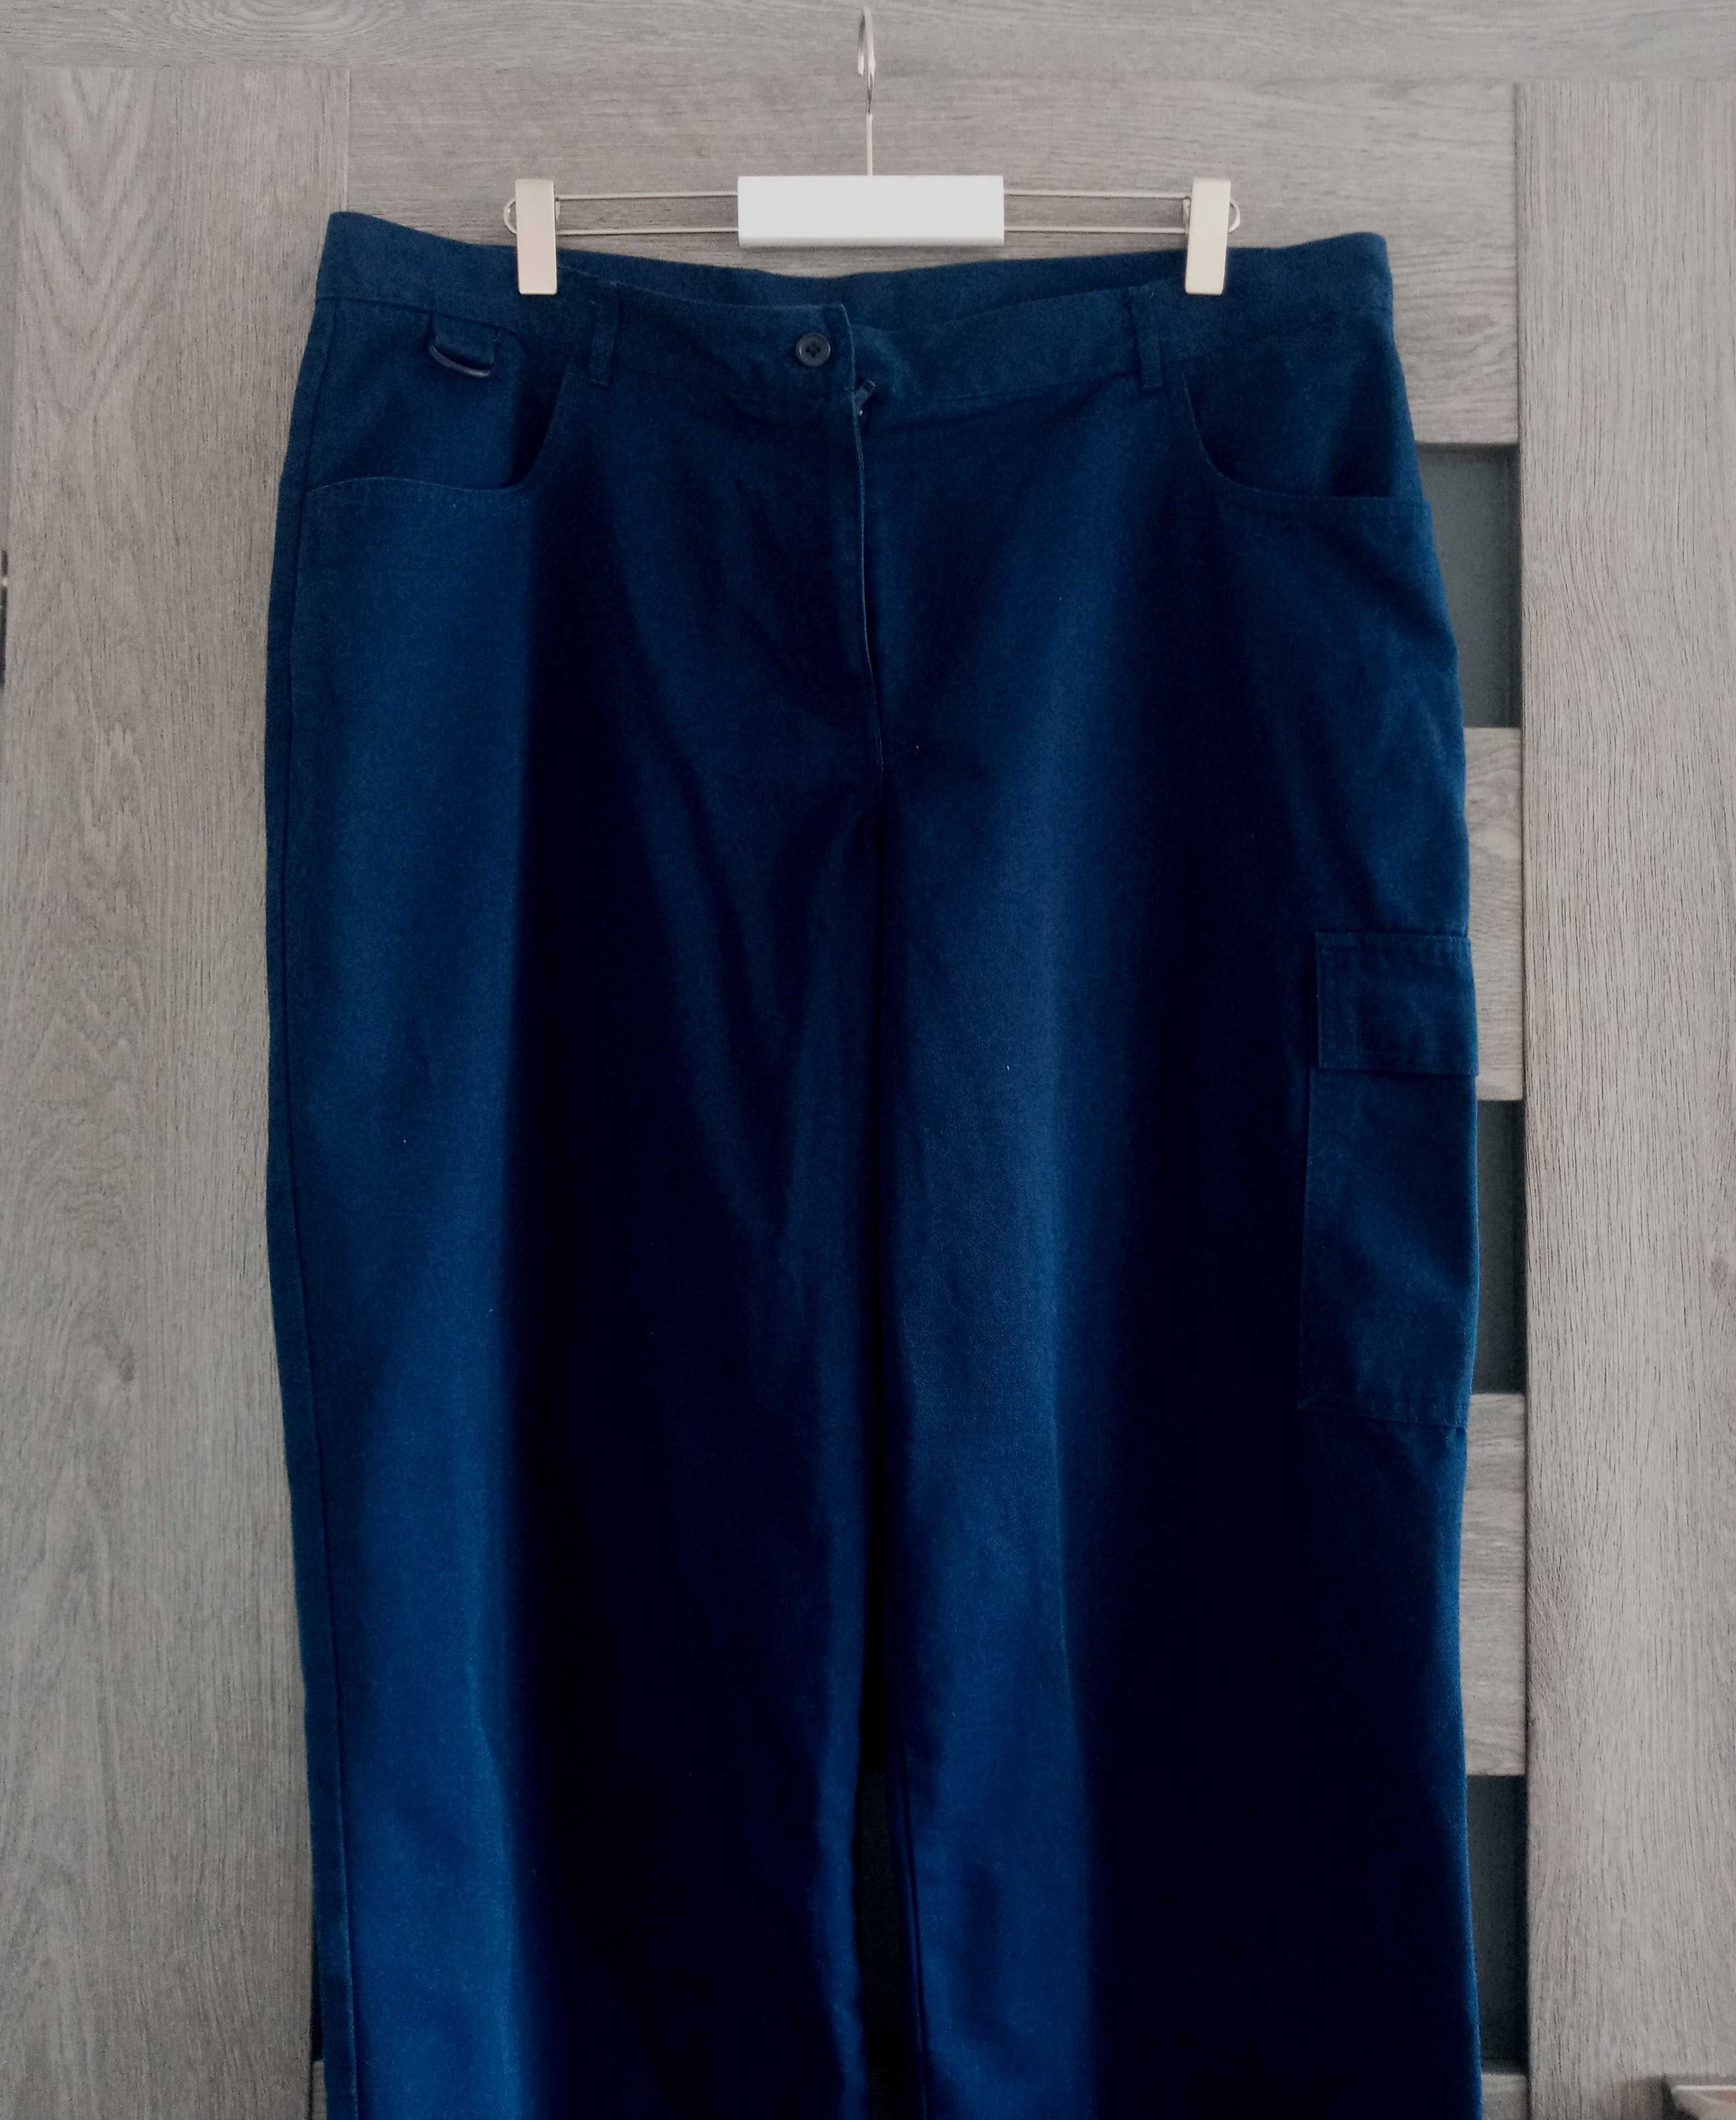 Granatowe spodnie bojówki szerokie nogawki 54 38